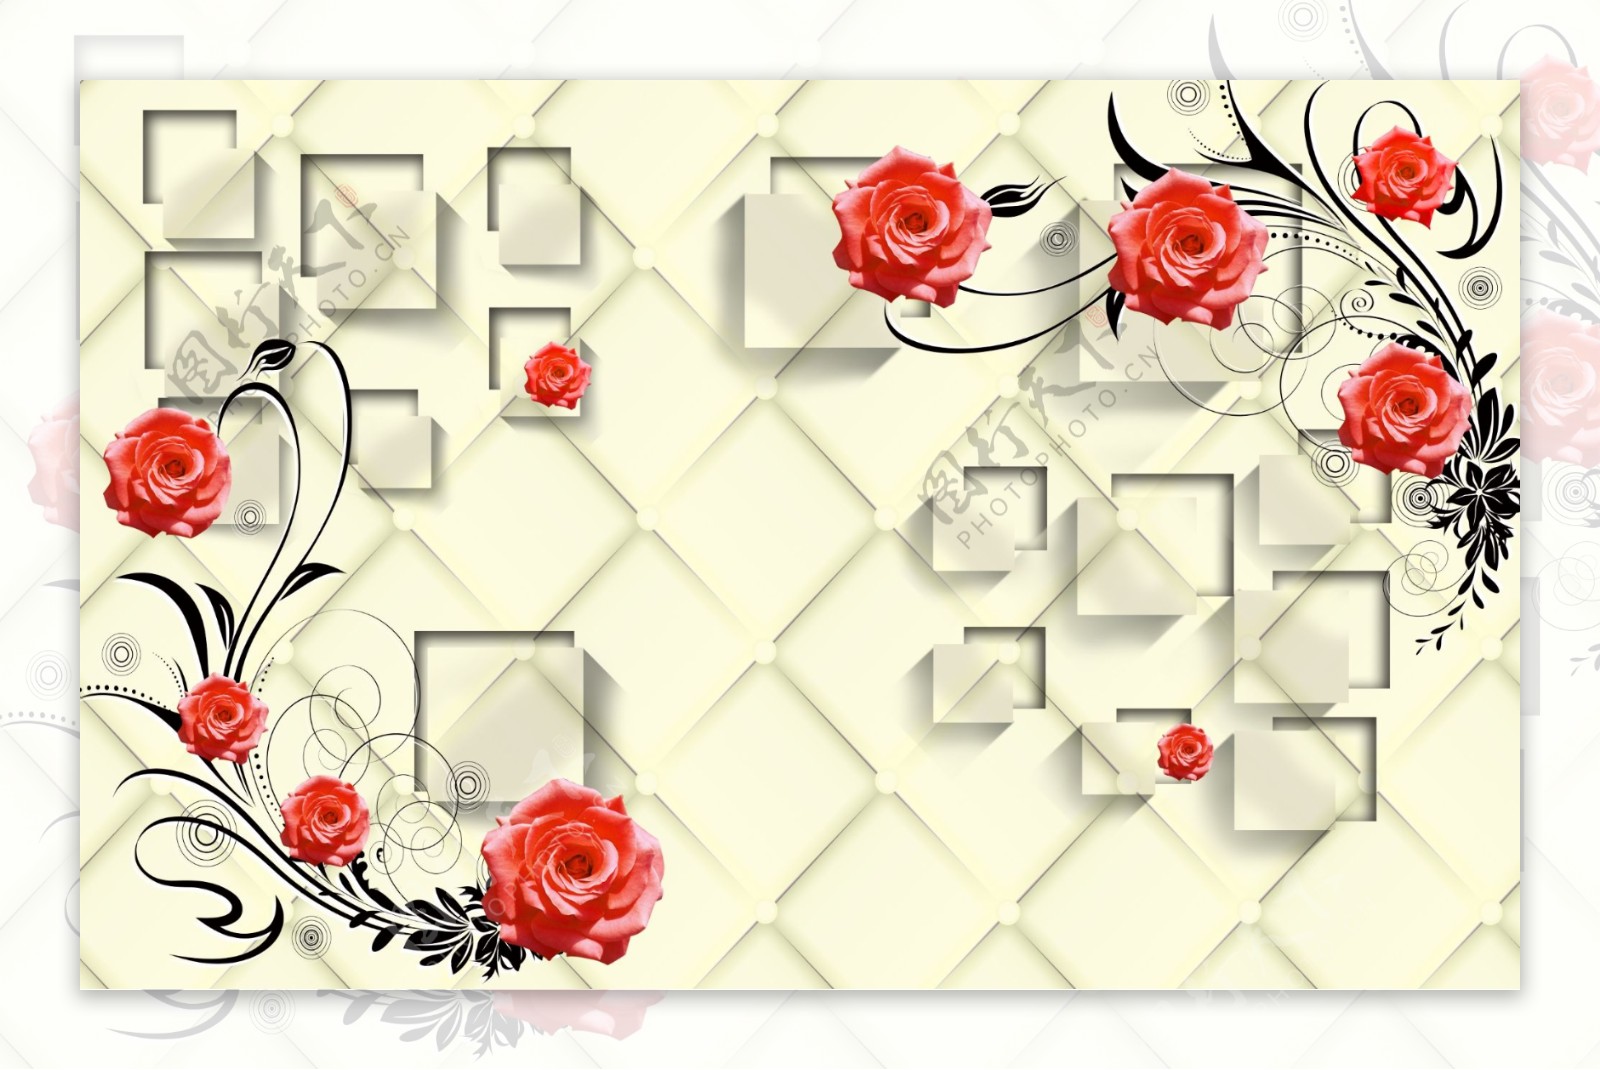 3d立体方块玫瑰花藤软包背景墙